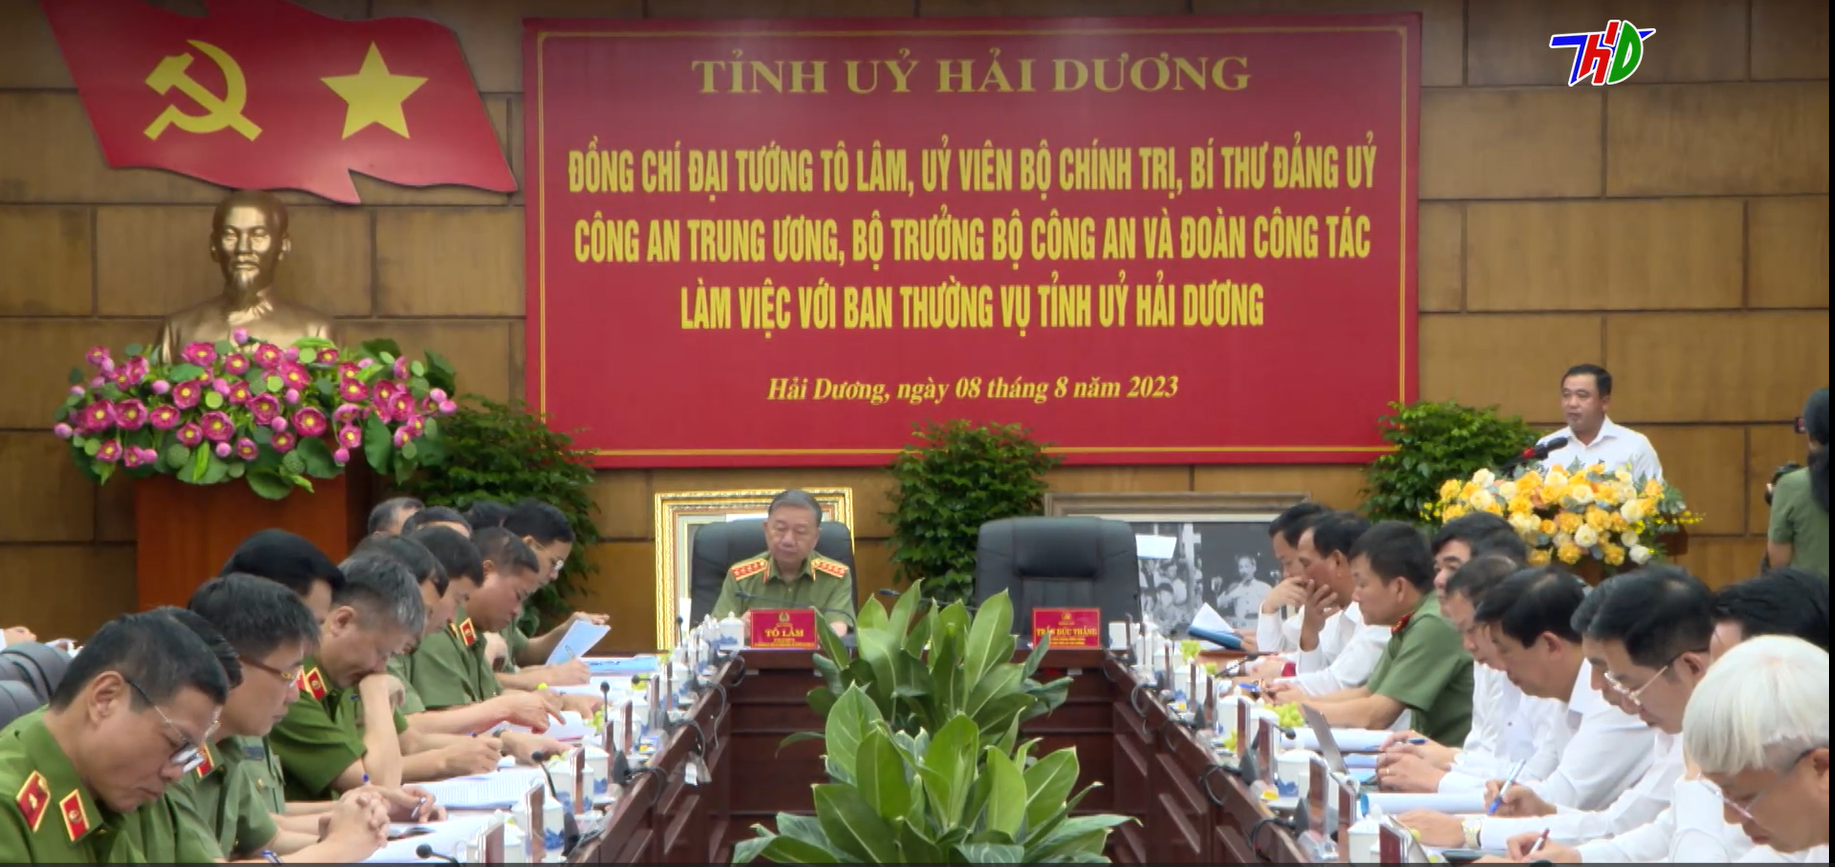 Ban Thường vụ Đảng uỷ Công an Trung ương làm việc với Tỉnh ủy Hải Dương